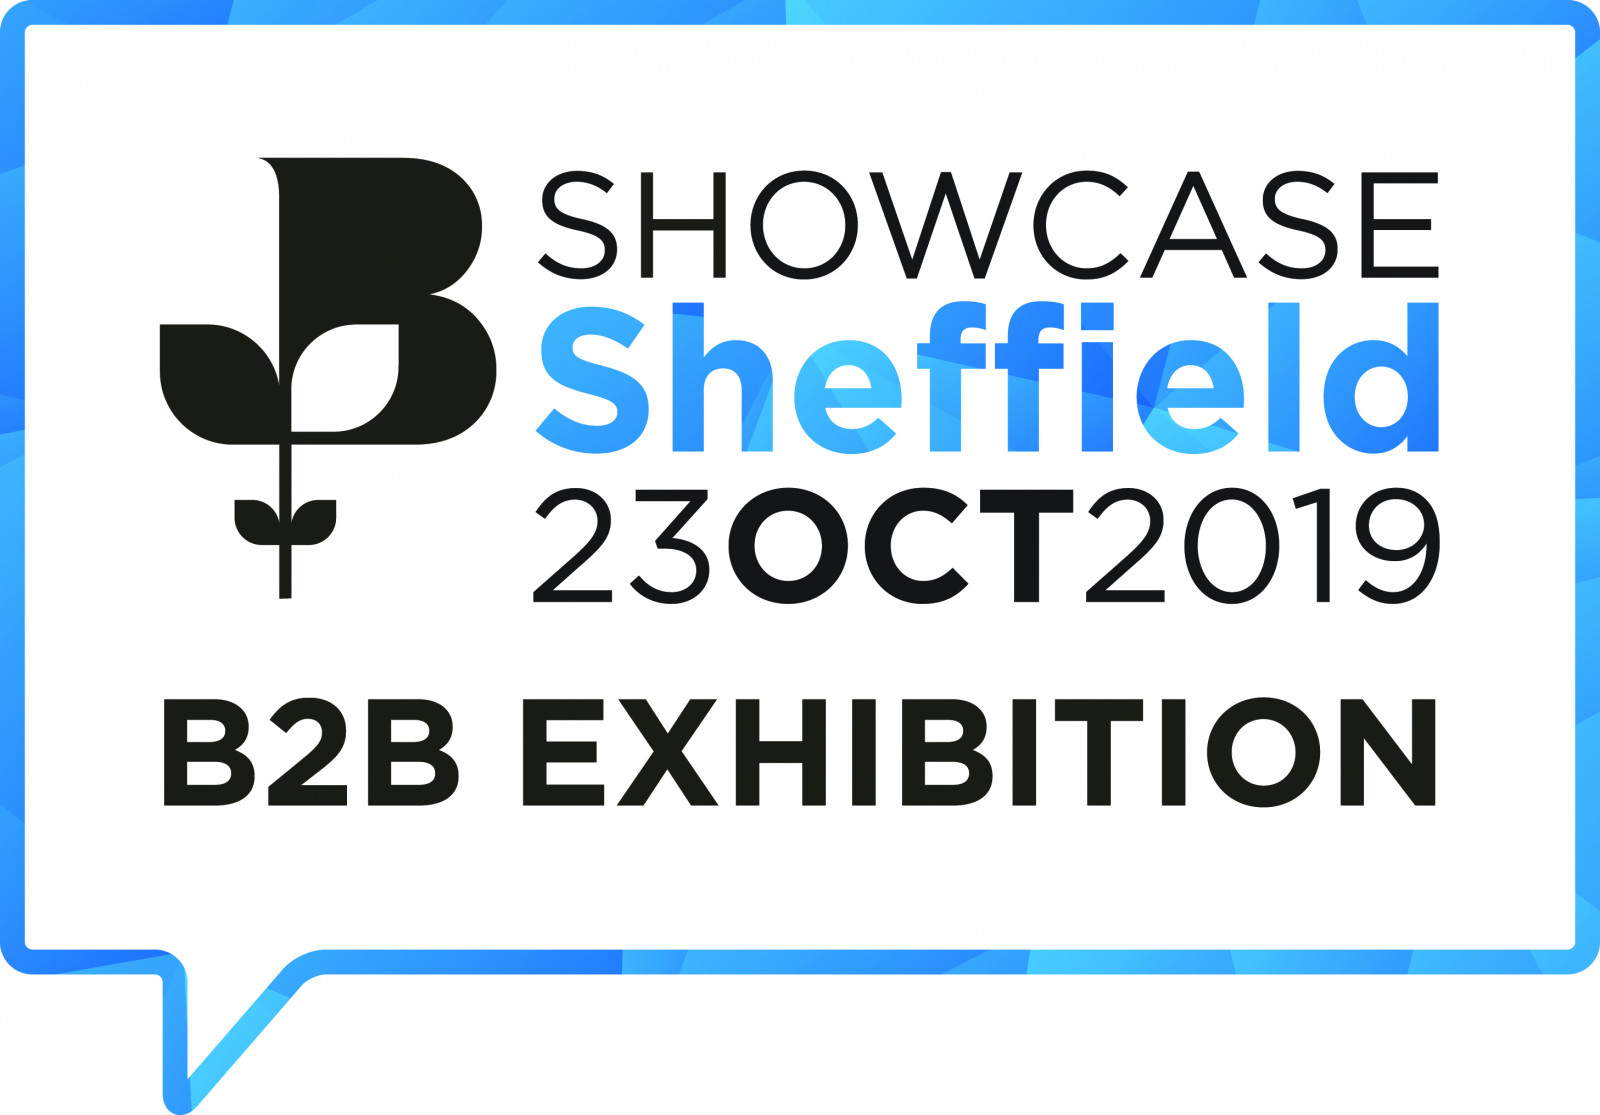 Showcase Sheffield 2019 - 